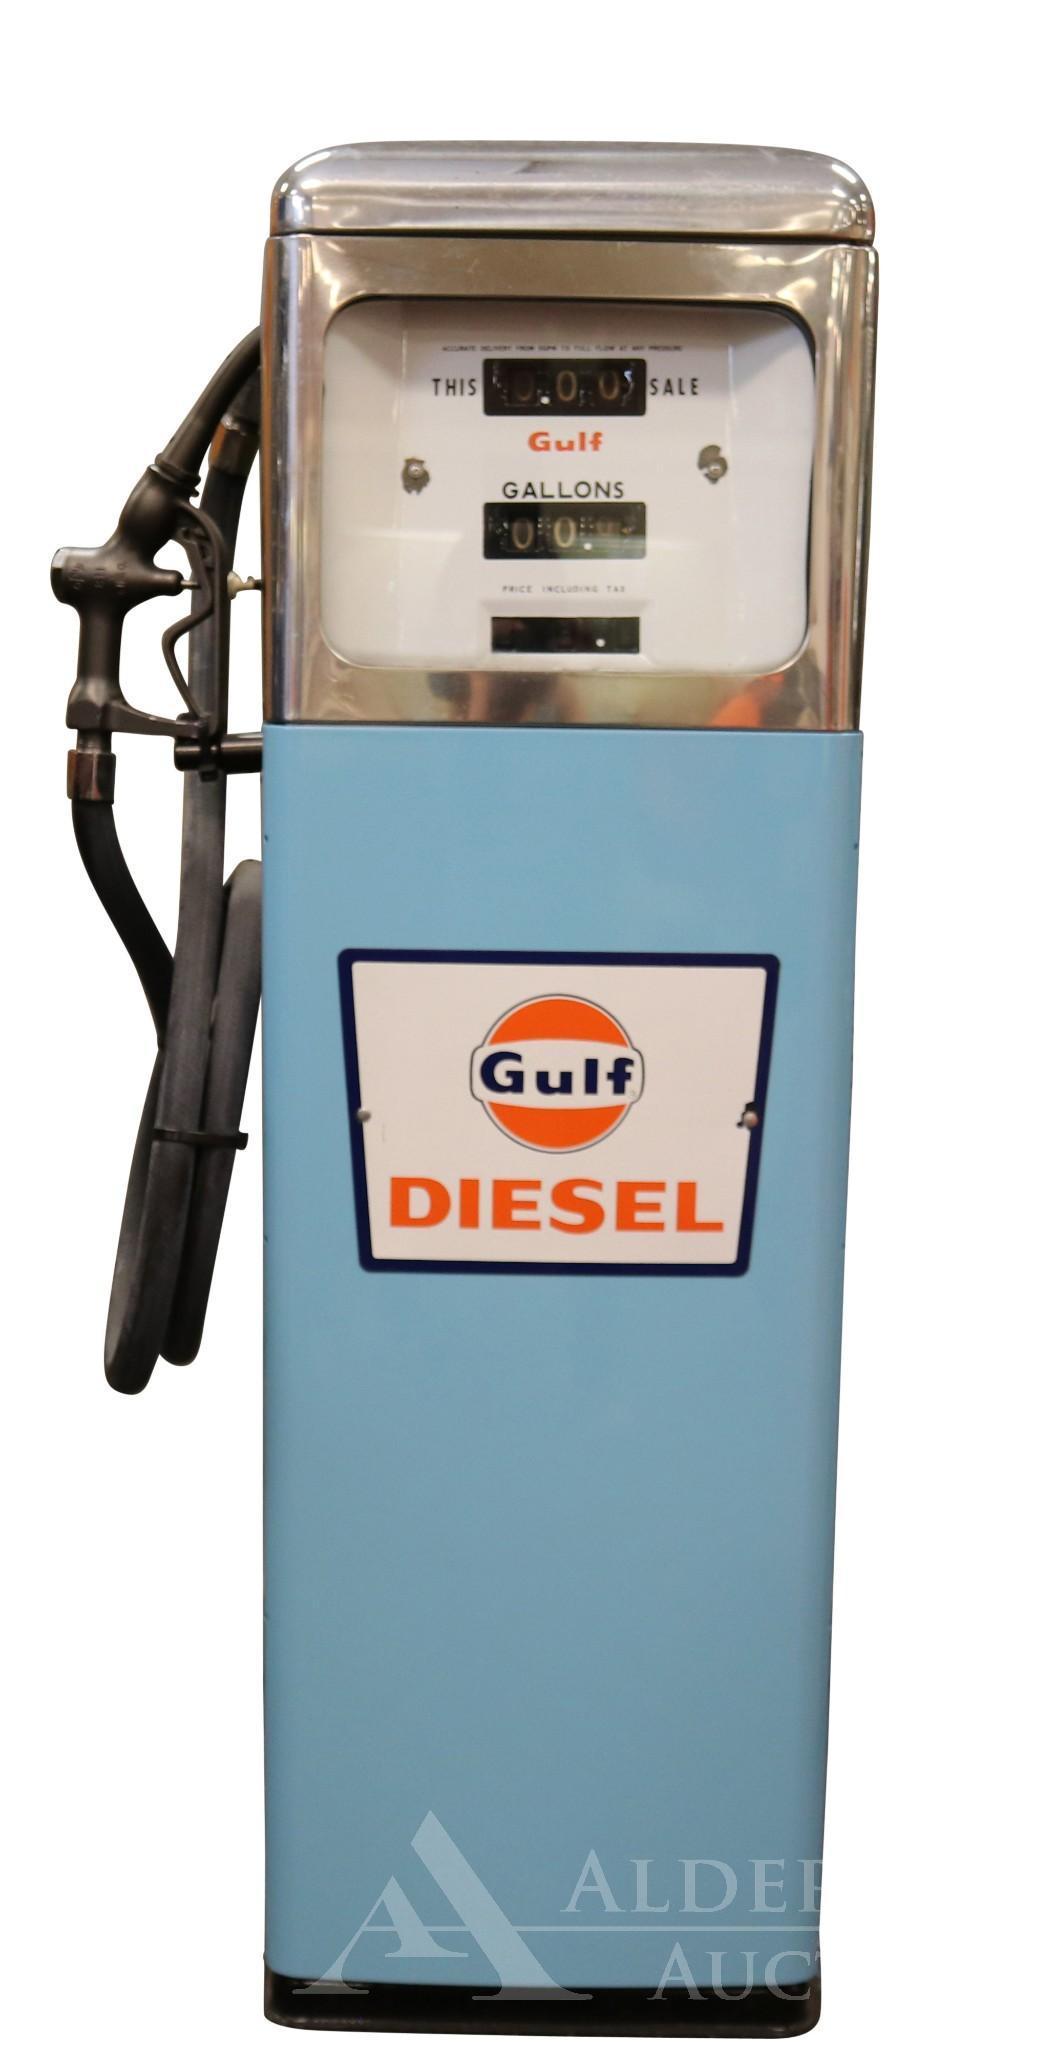 Gulf Diesel Gasoline in Gas Pump